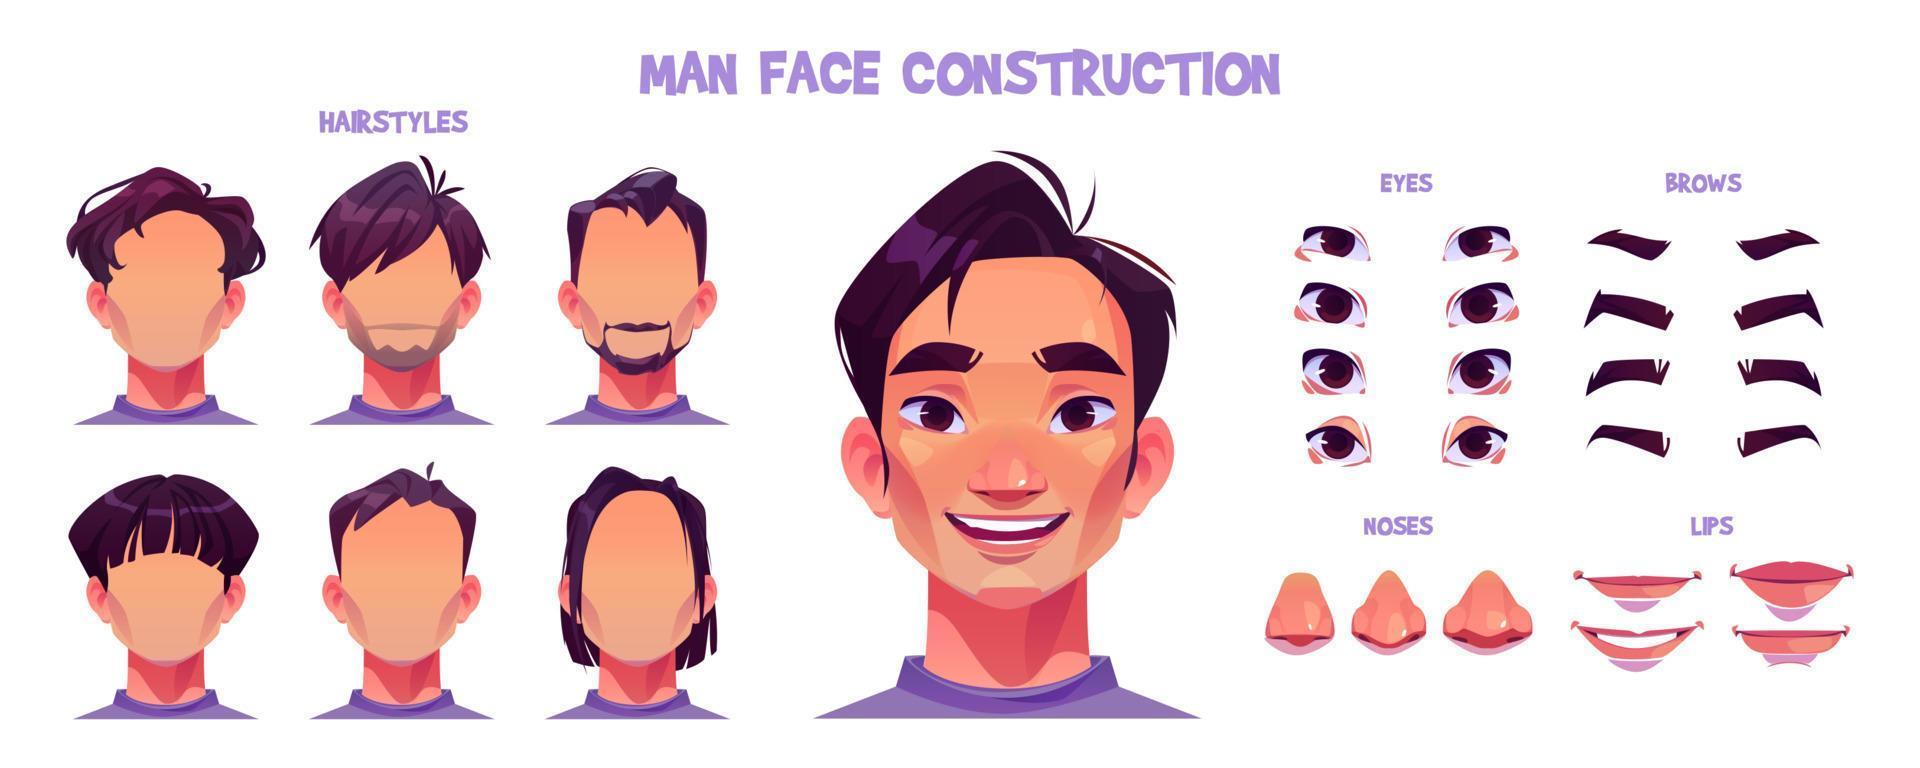 Asian man face construction cartoon set on white vector